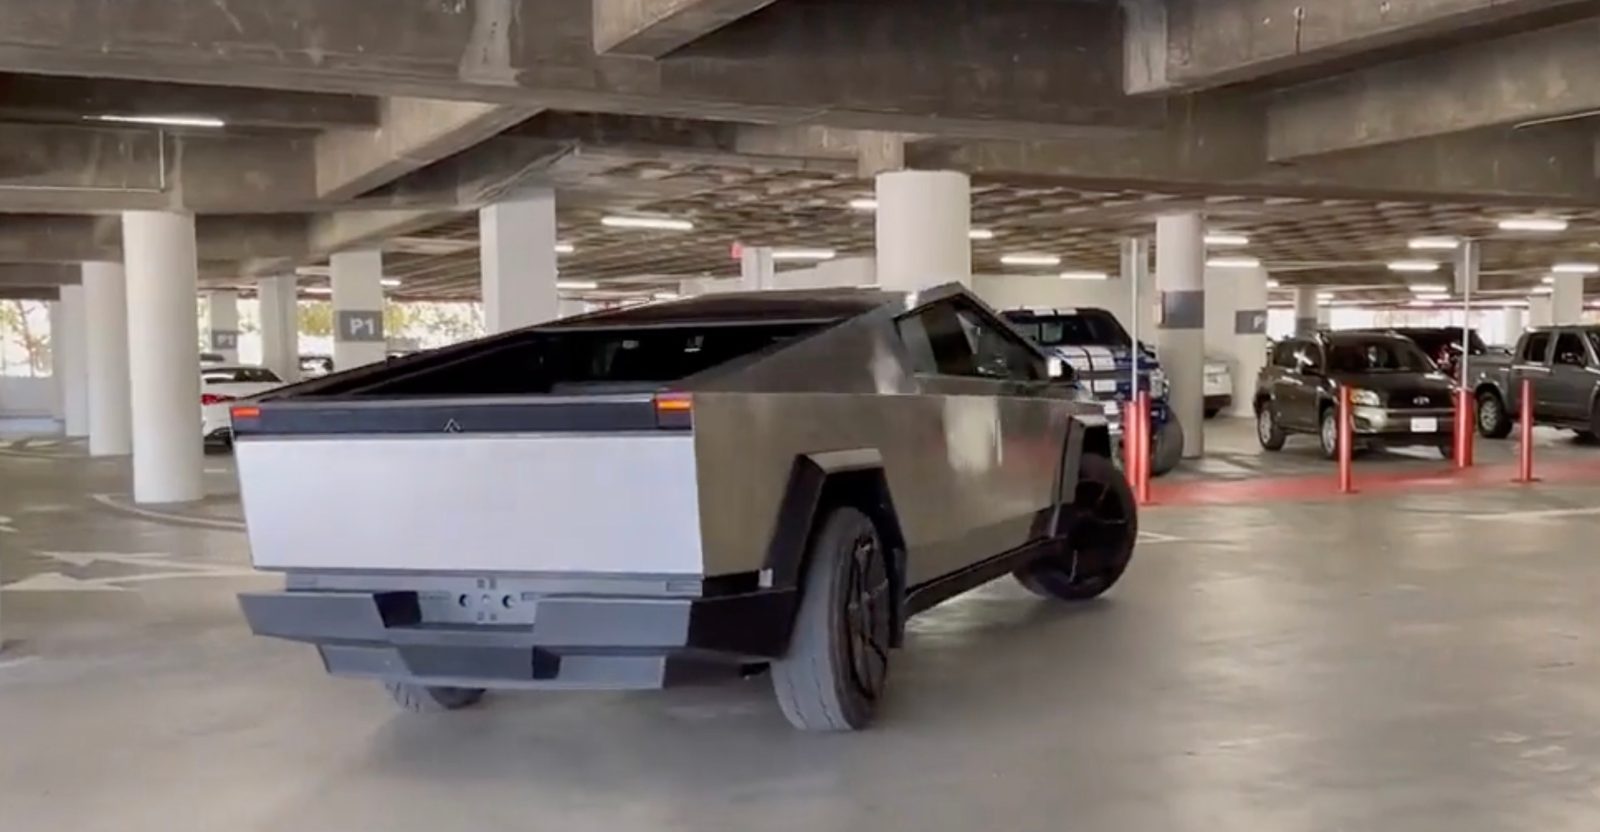 Tesla Cybertruck rear wheel steering parking garage